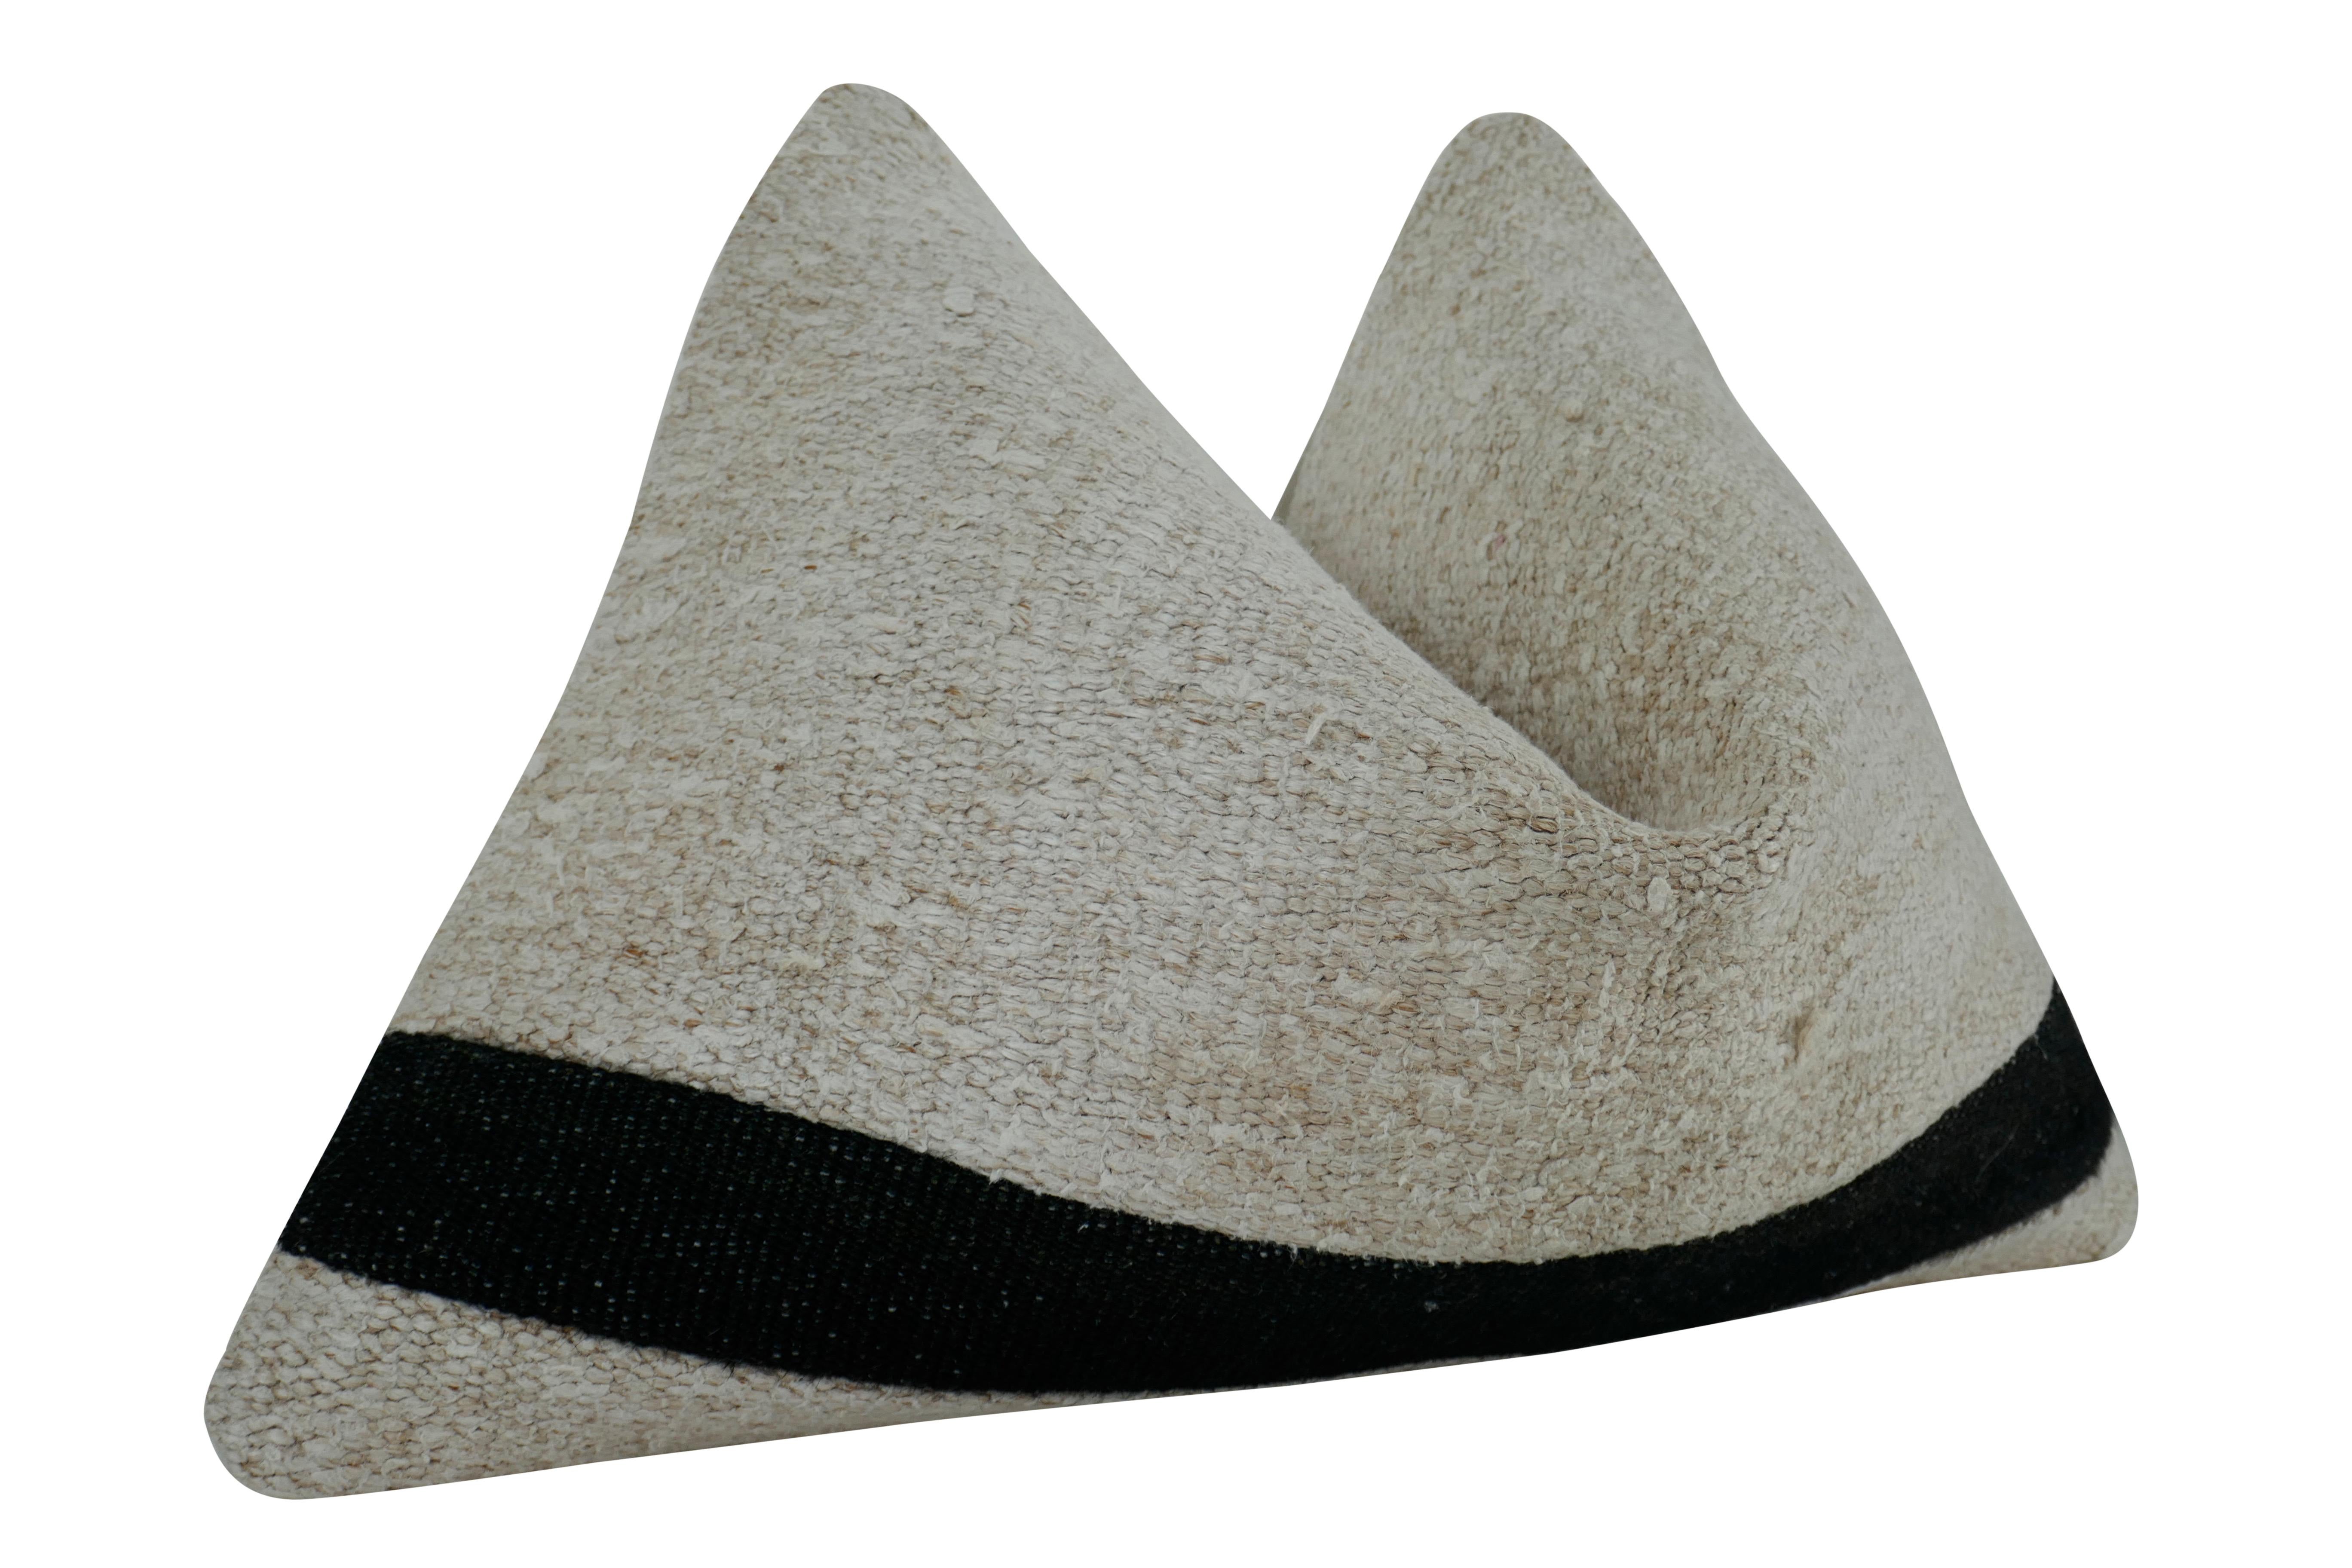 Vintage Kilim Berber Stammes-Kissen. Authentisches, einzigartiges, handgewebtes Kilim-Textil aus natürlicher organischer Wolle in Natur- und Schwarztönen mit schwerer Struktur. Ergänzt durch weißes, luxuriöses Premium-Reinleinen auf der Rückseite.